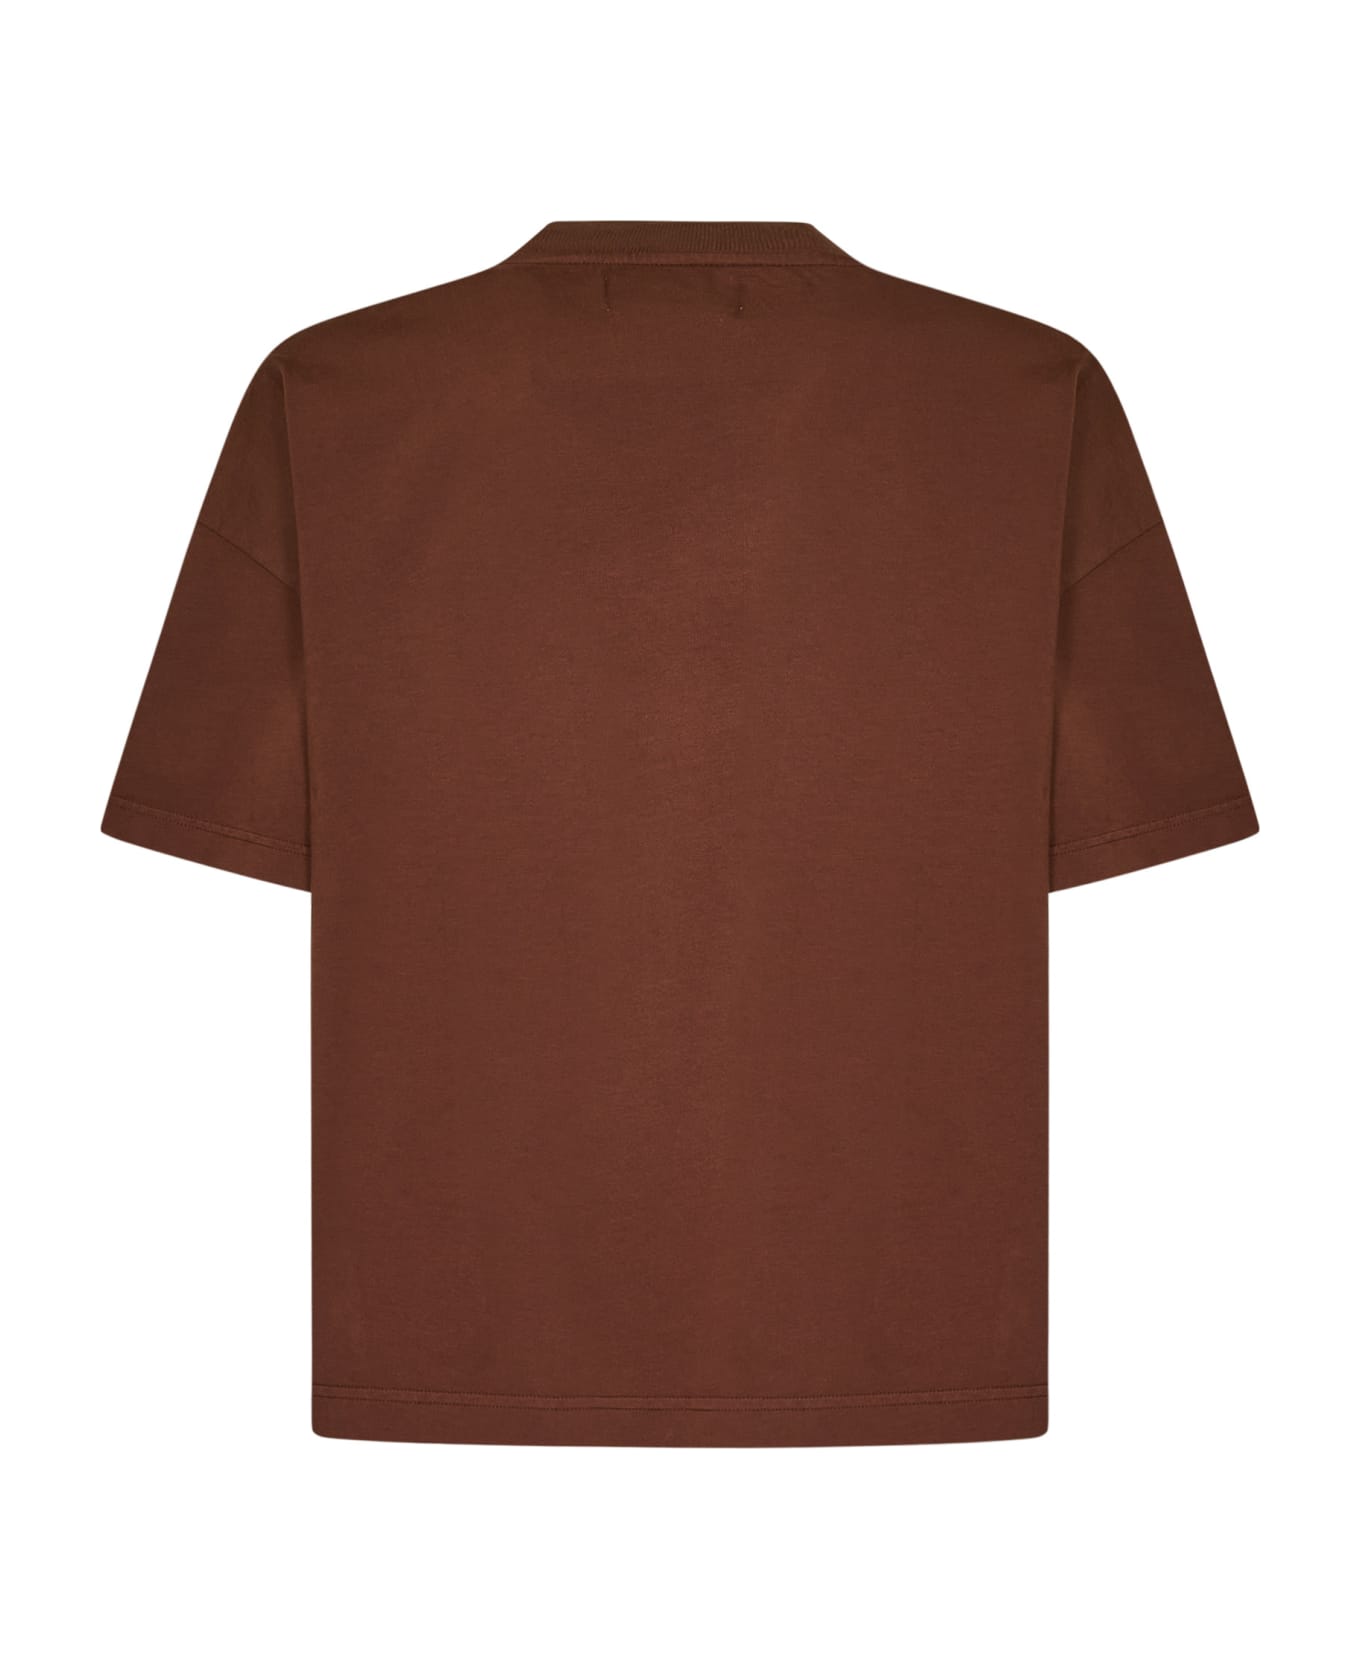 Bonsai T-shirt - Brown